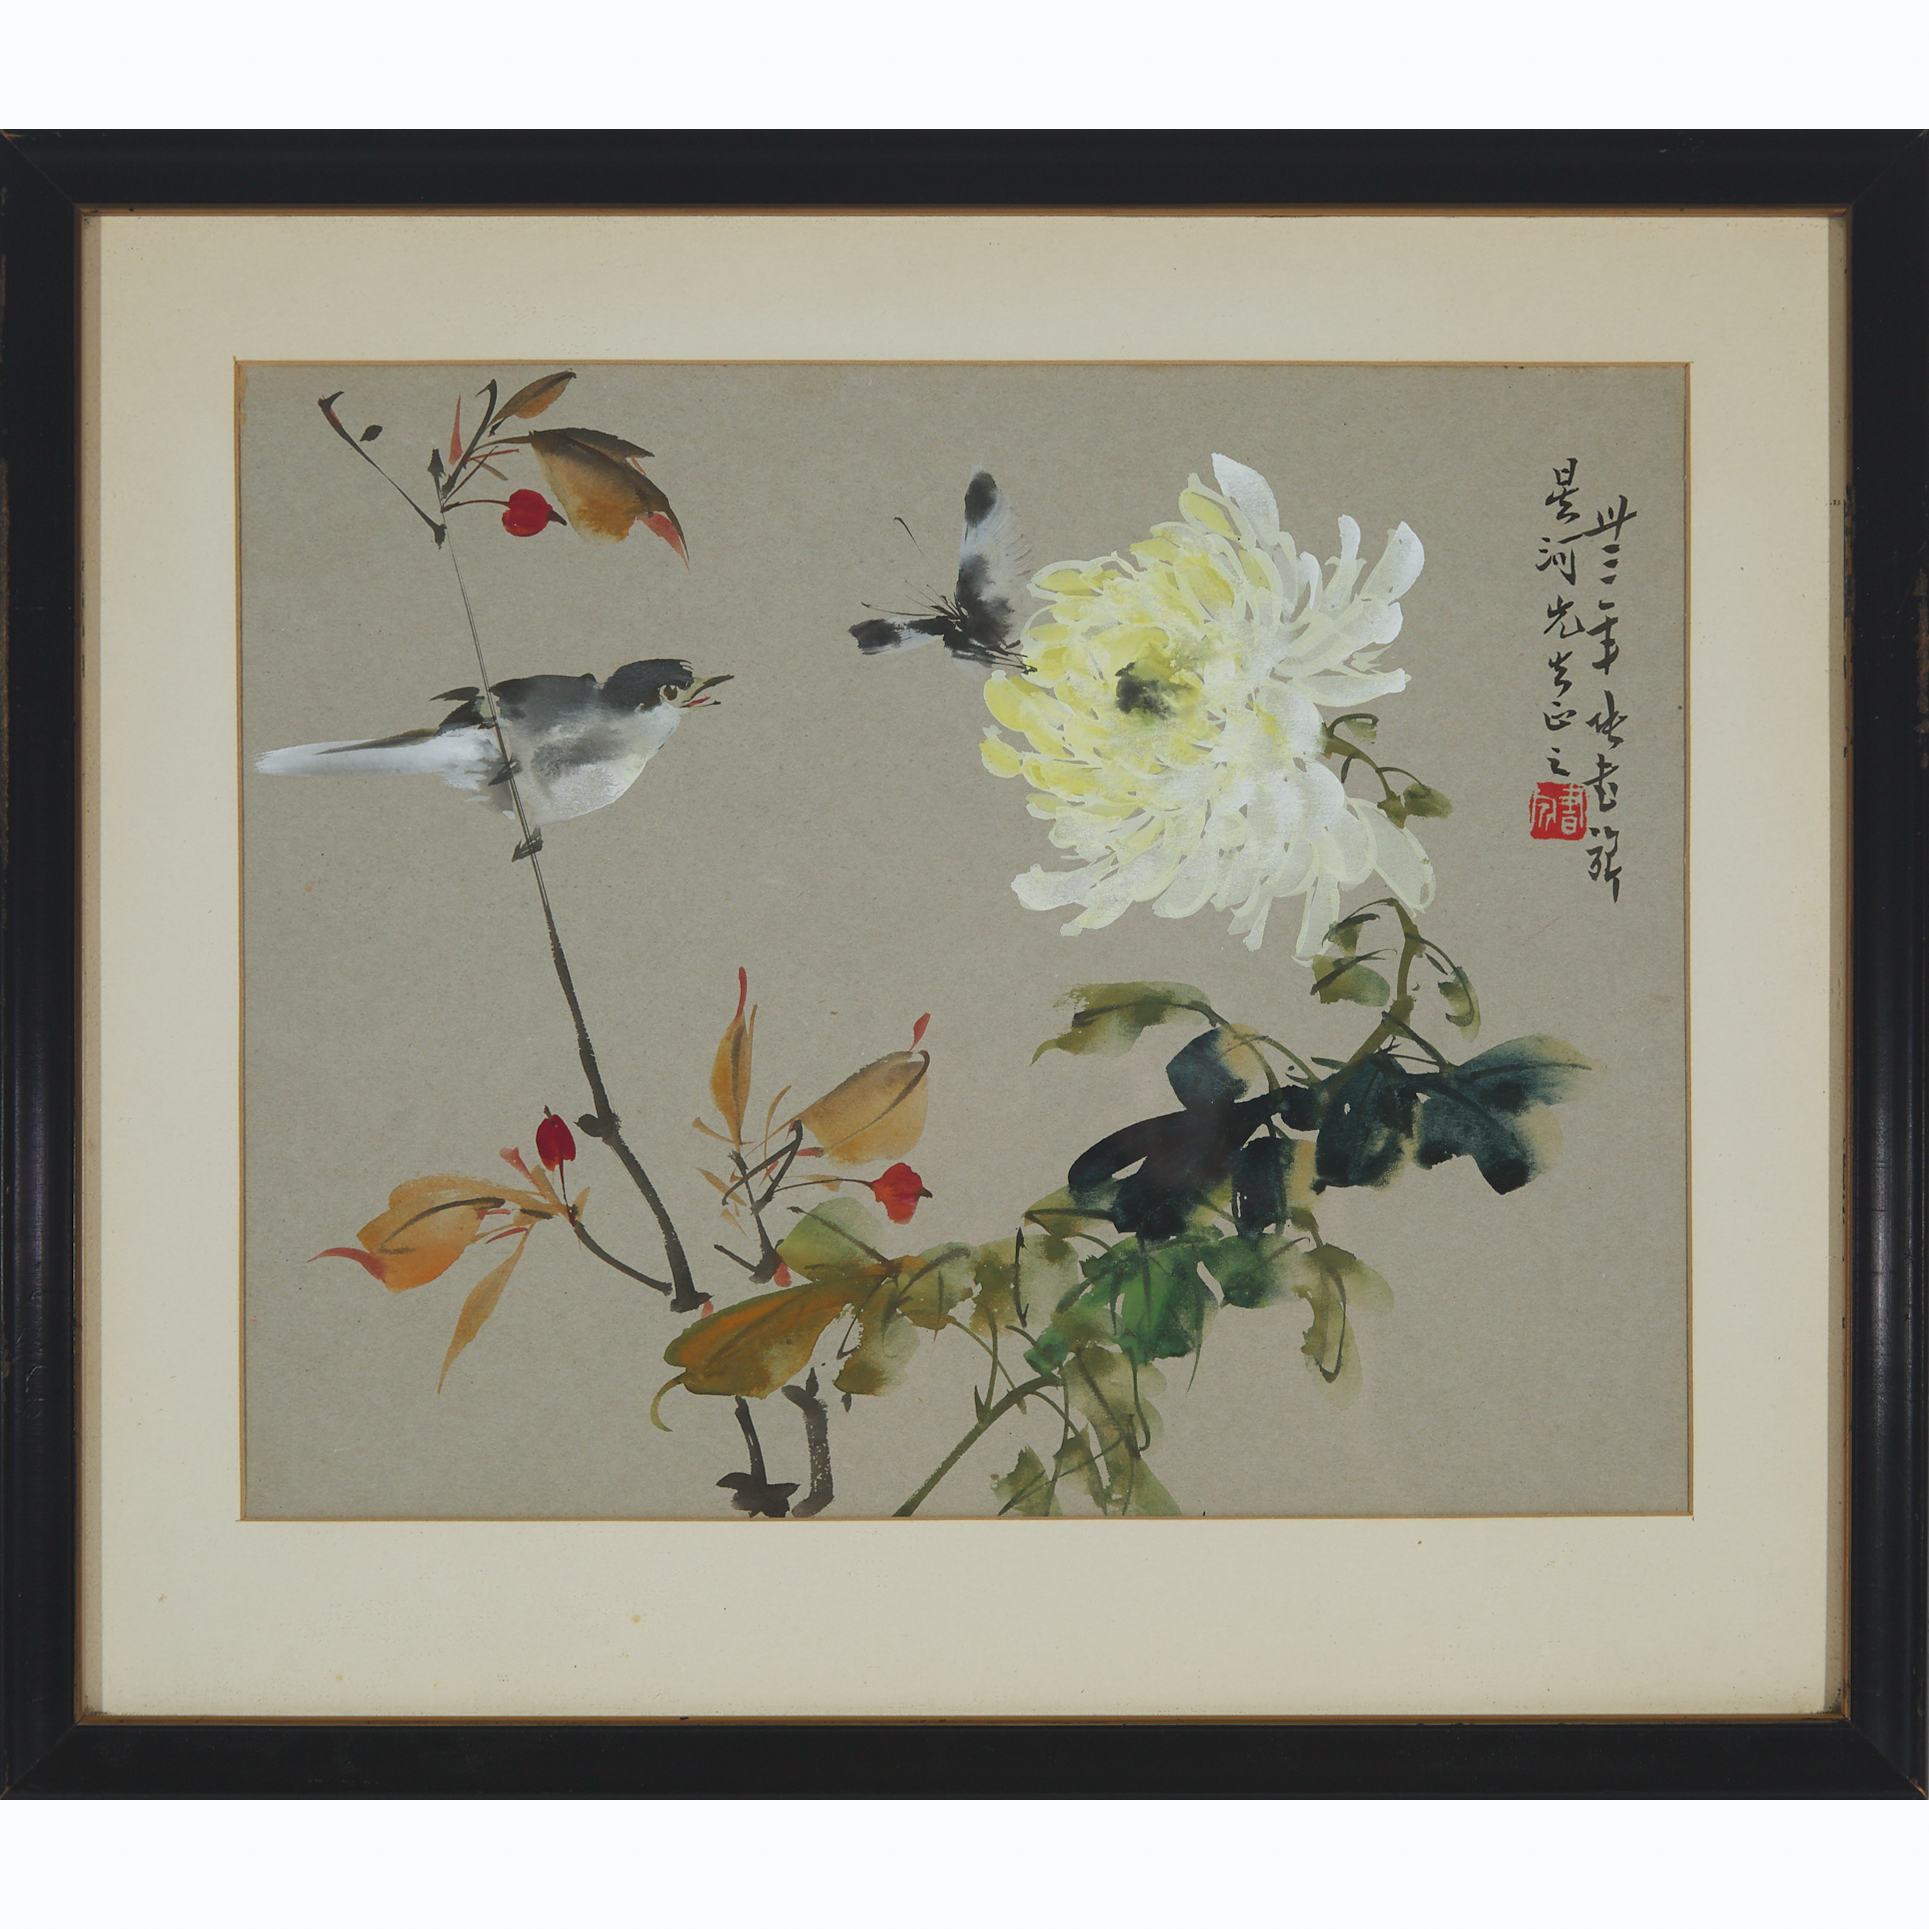 Zhang Shuqi (1901-1957), Bird, Butterfly, and Peony